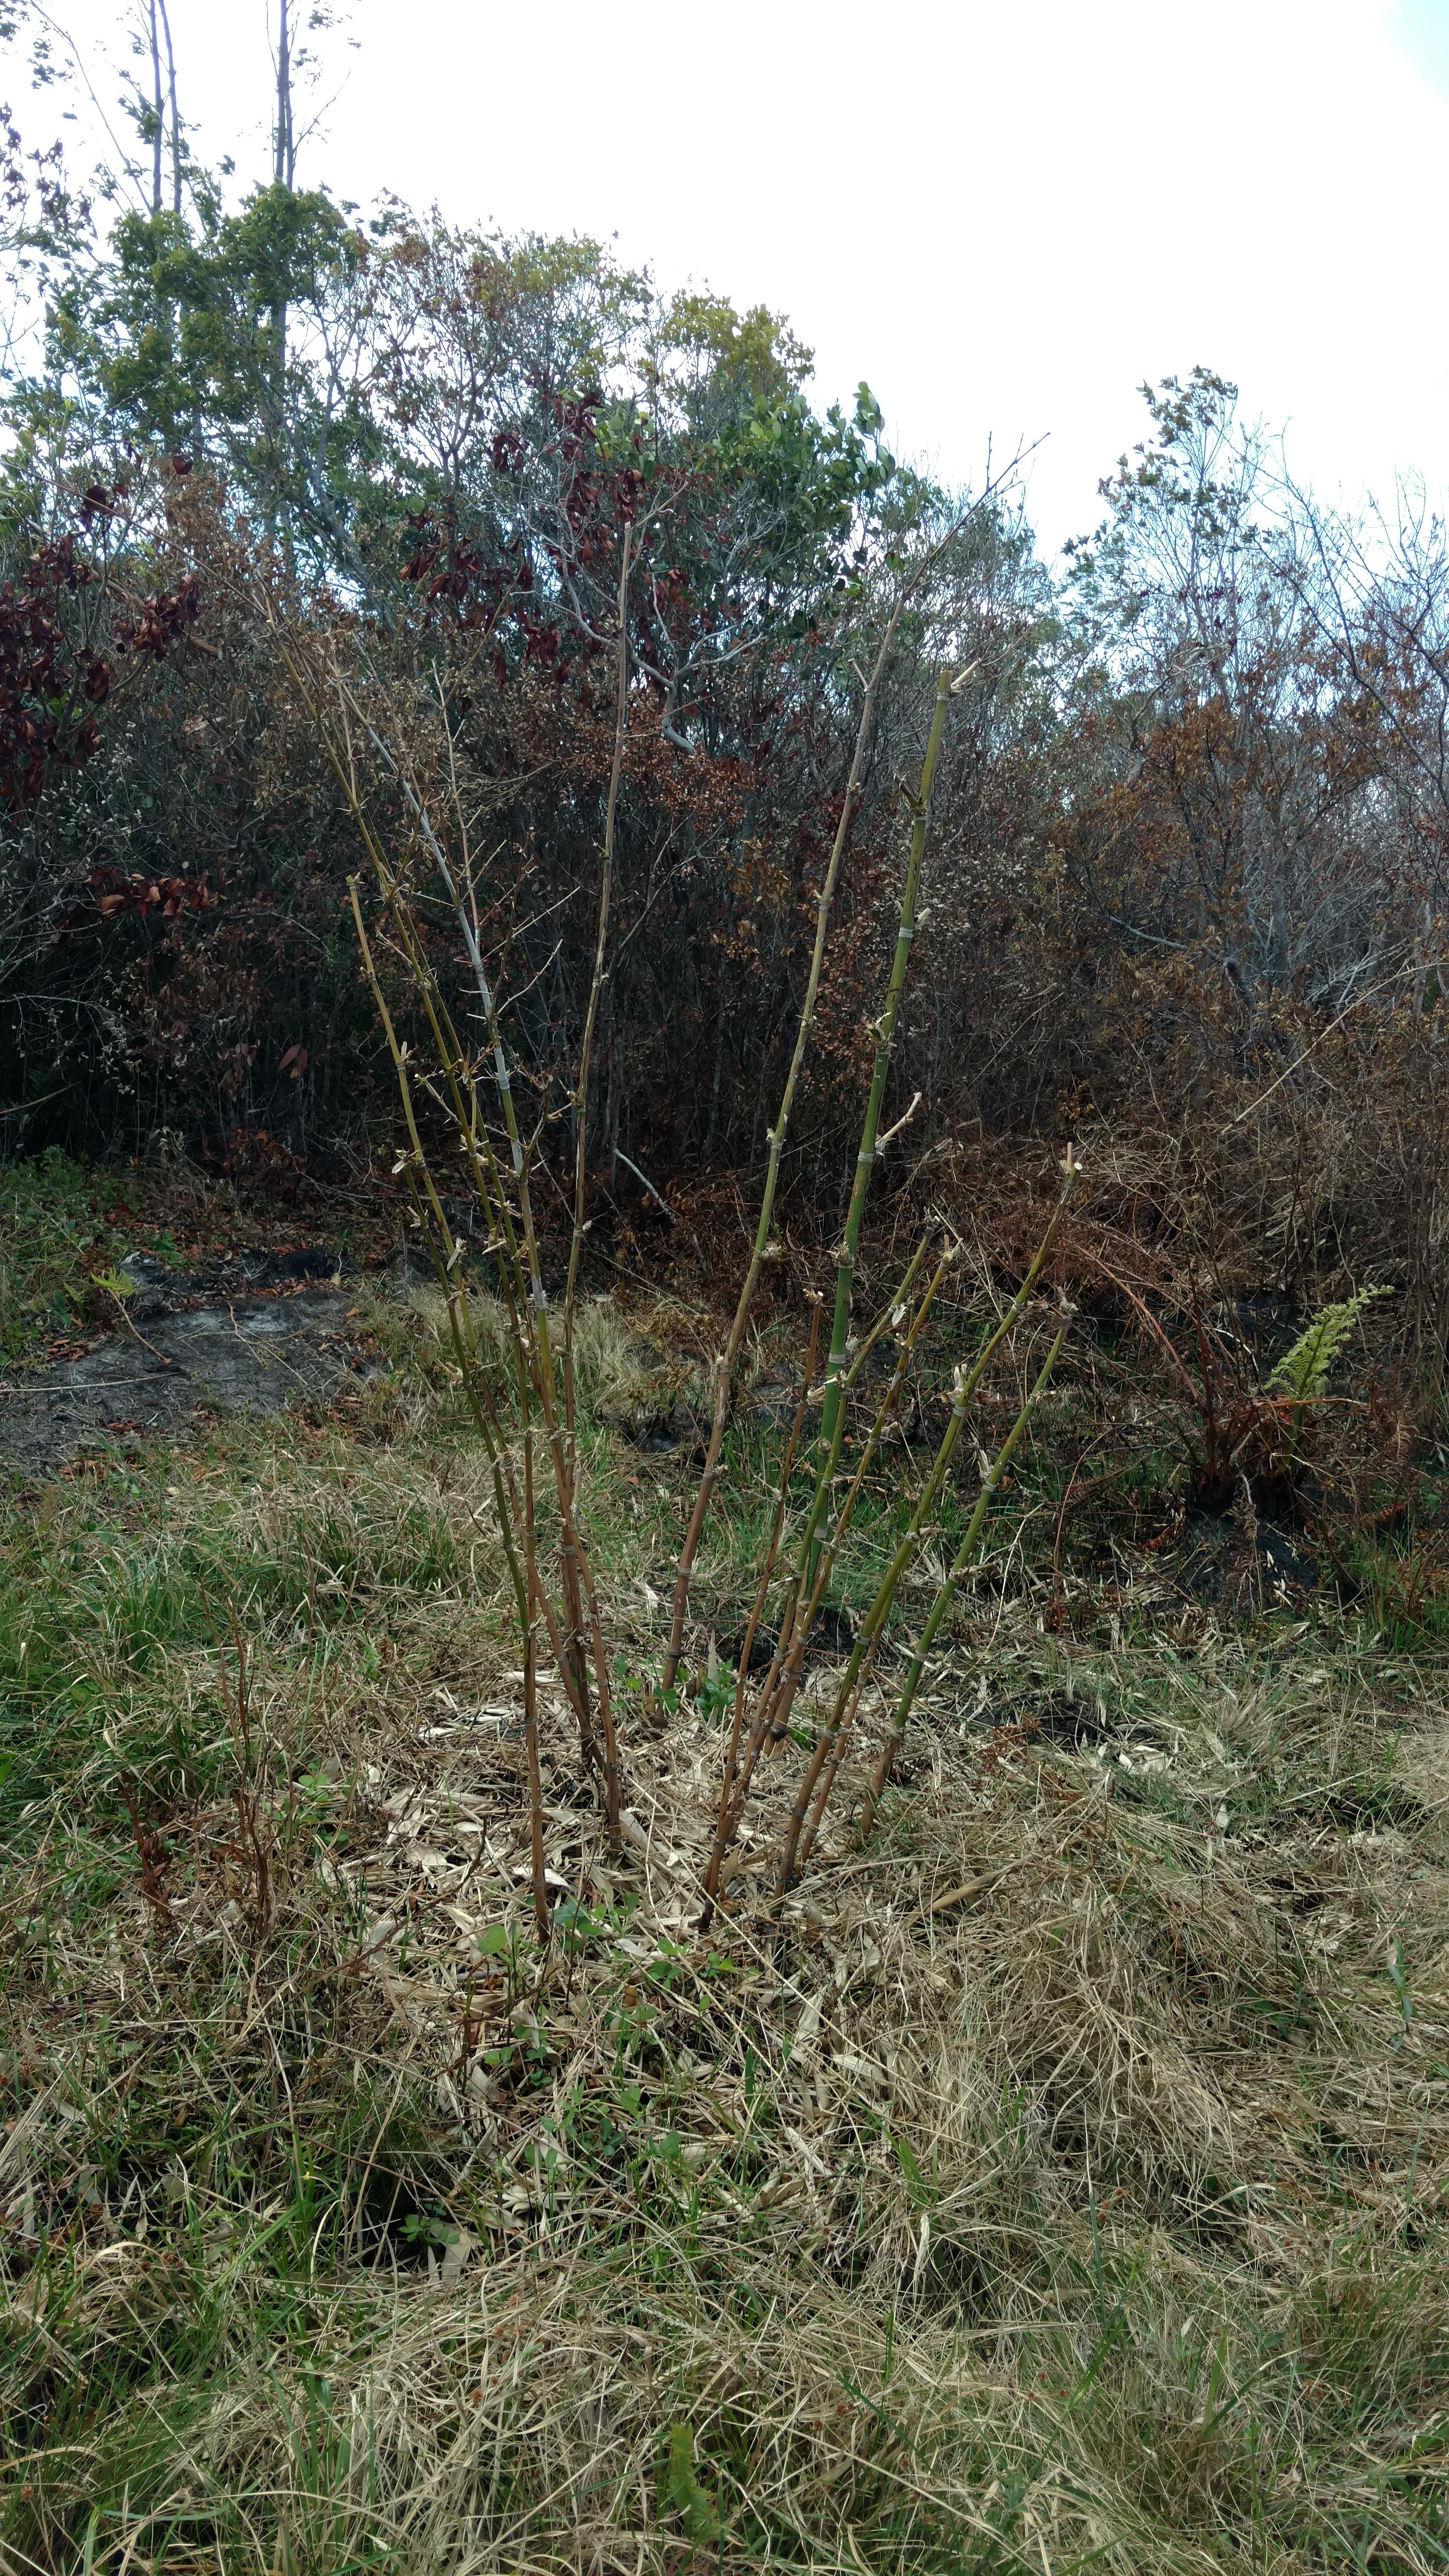 20171122 Fazenda Bambu Guadua angustifolia após poda e raleio após queimada incêndio para rebrote (3).jpg